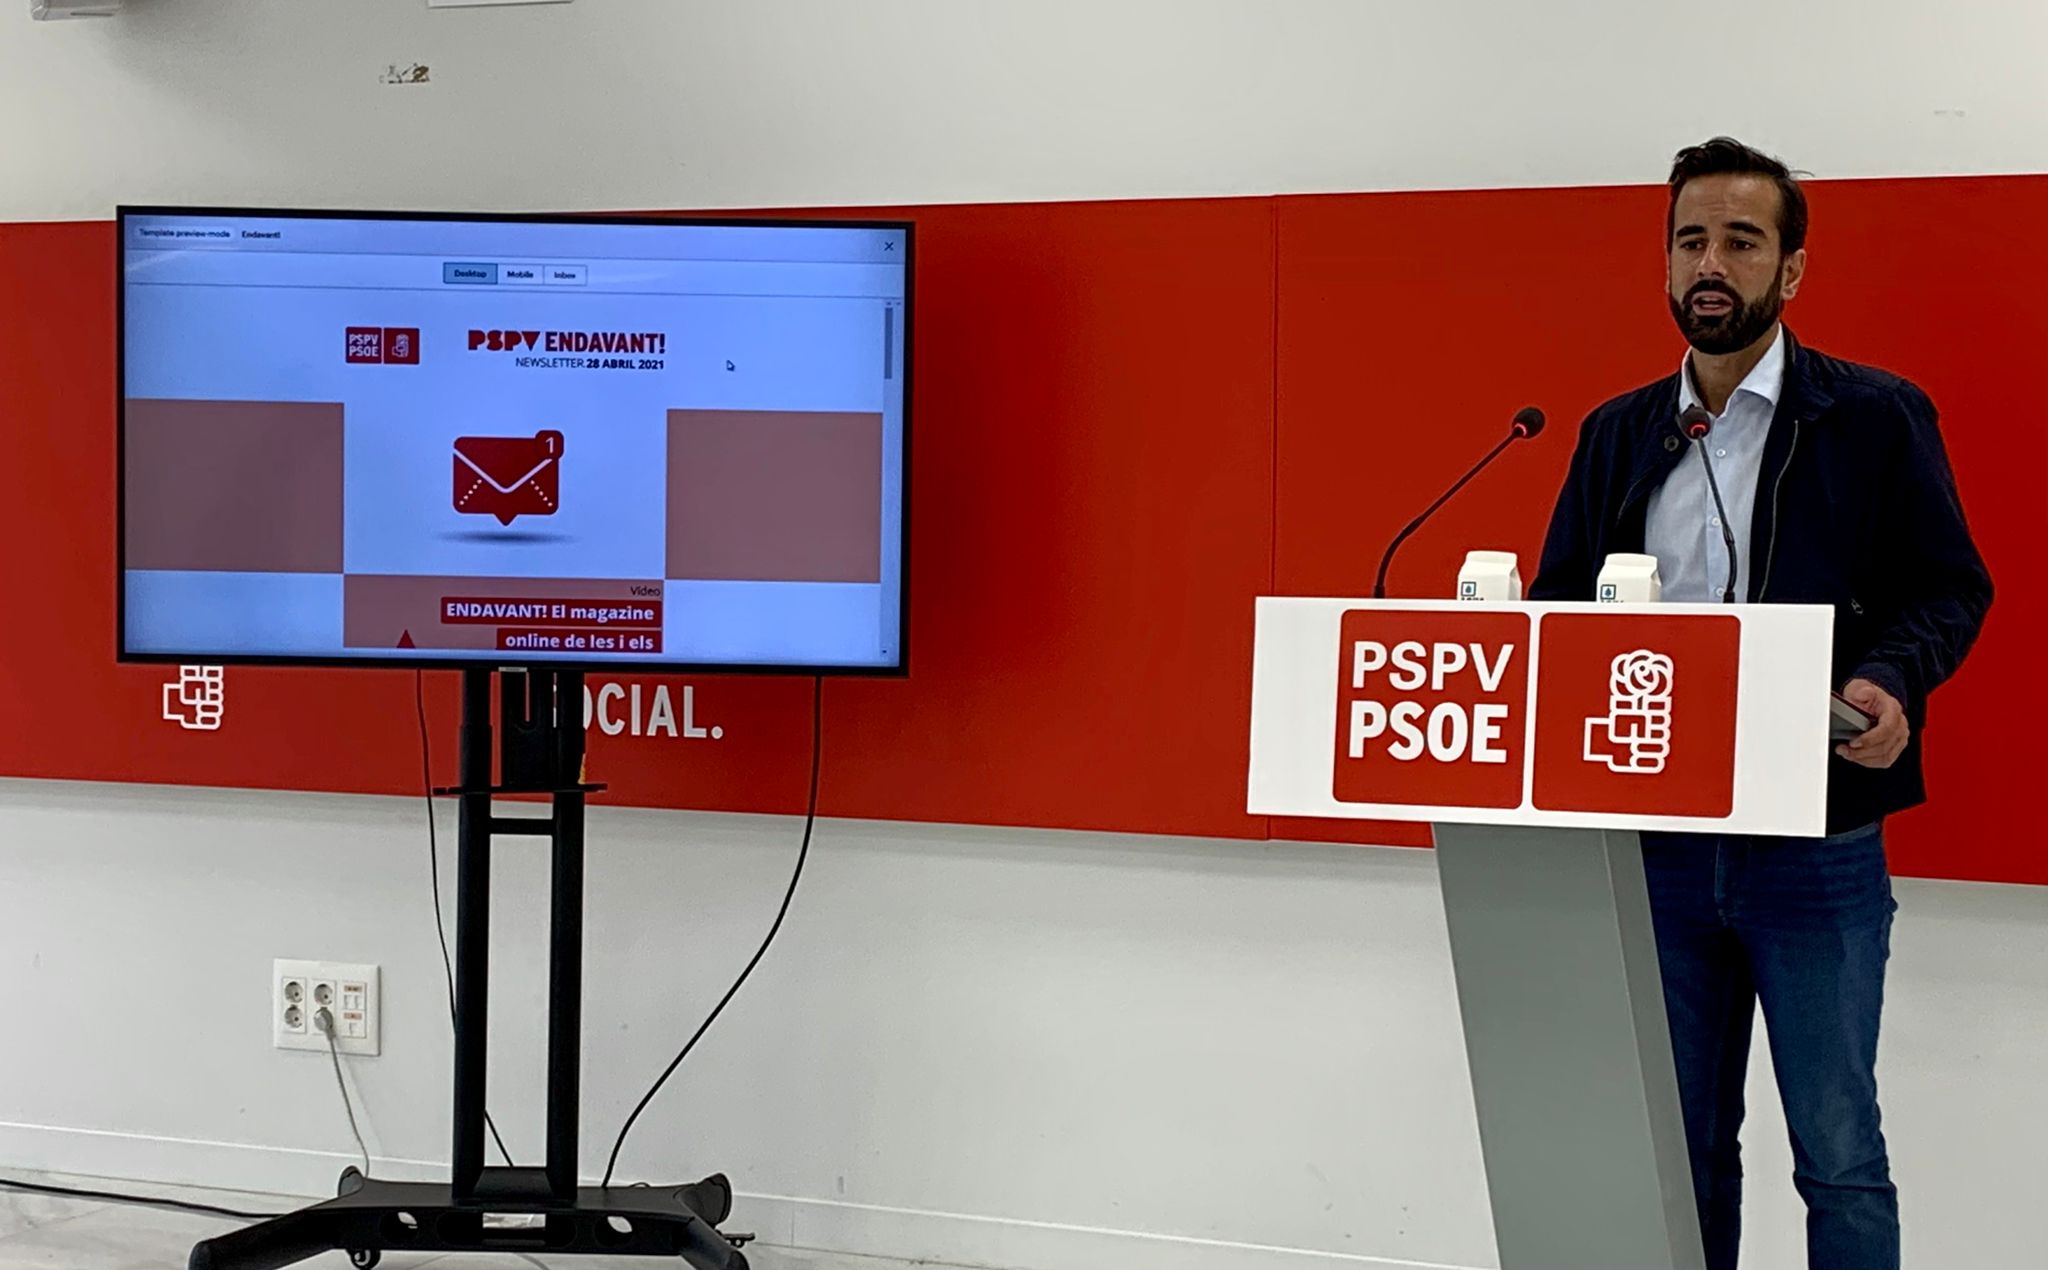 En este momento estás viendo El PSPV-PSOE presenta su revista digital Endavant! para apostar por la actualidad, la transparencia y la verificación de datos